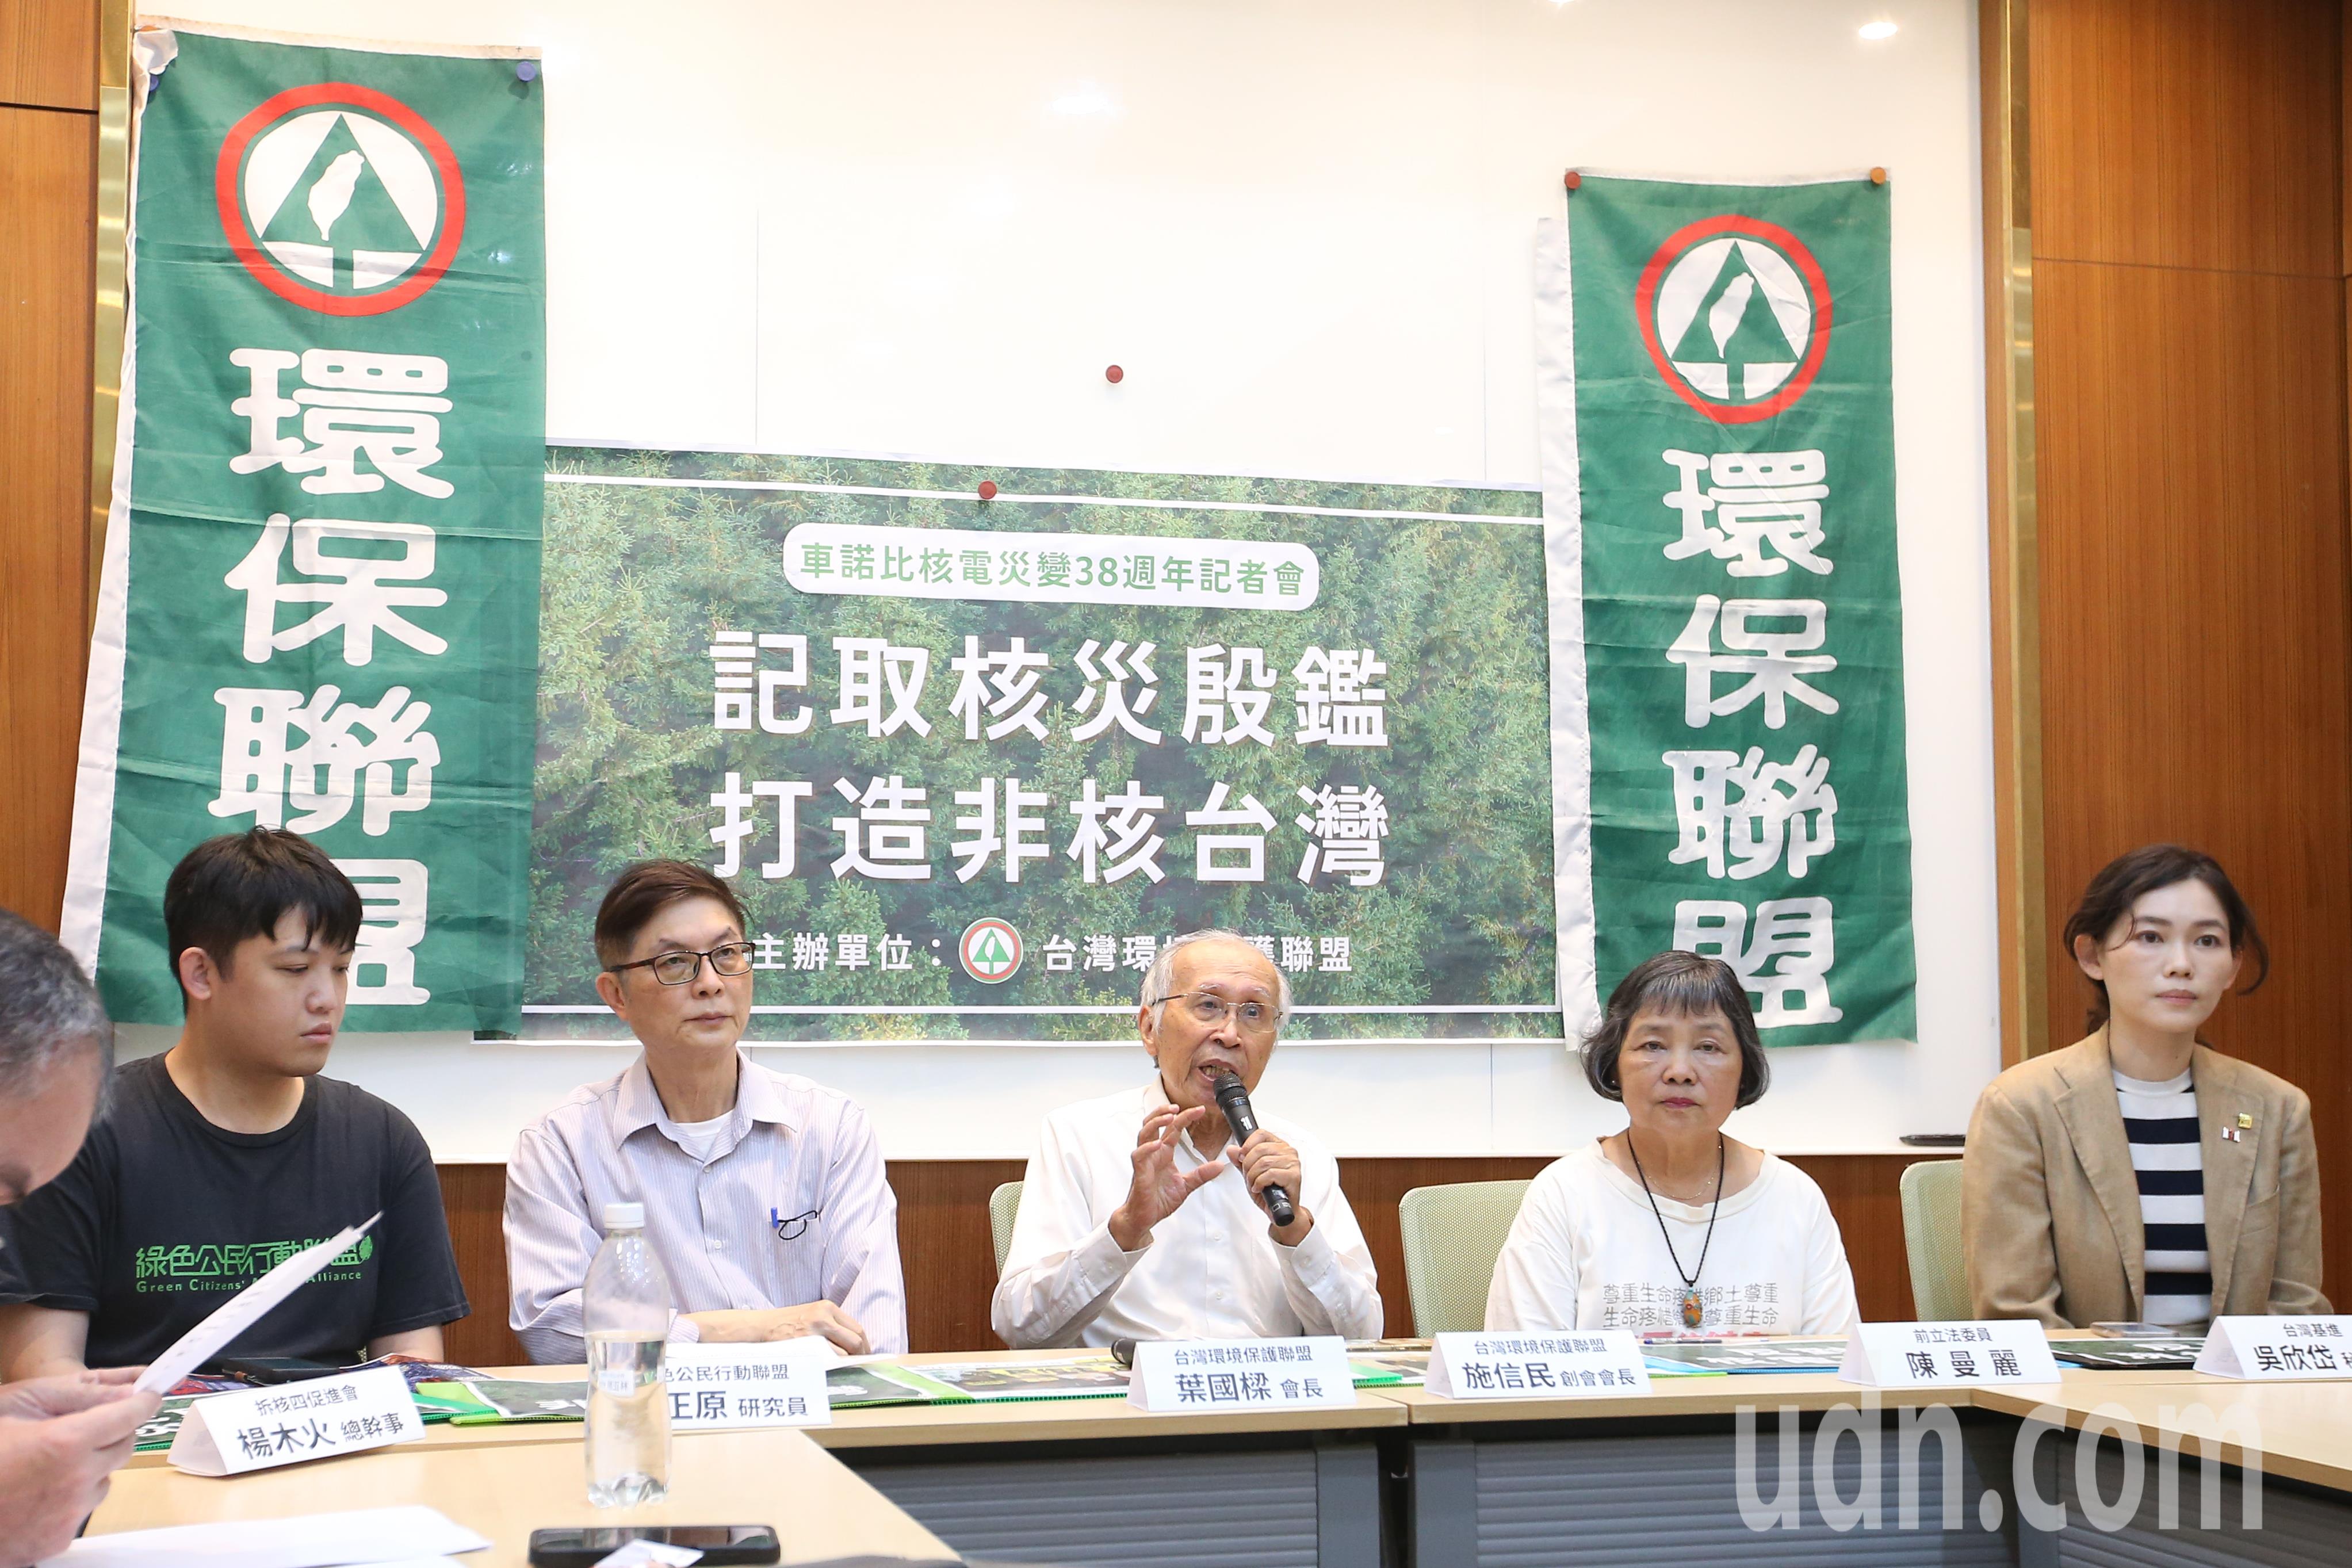 台湾环境保护联盟上午举行，台湾环境保护联盟会长叶国梁（右三）表示车诺比核电灾变为人类史上最大的核电意外，也对世界的能源政策造成相当多的影响，核电工业受到重挫，民众也对核安问题开始重视。记者叶信菉／摄影